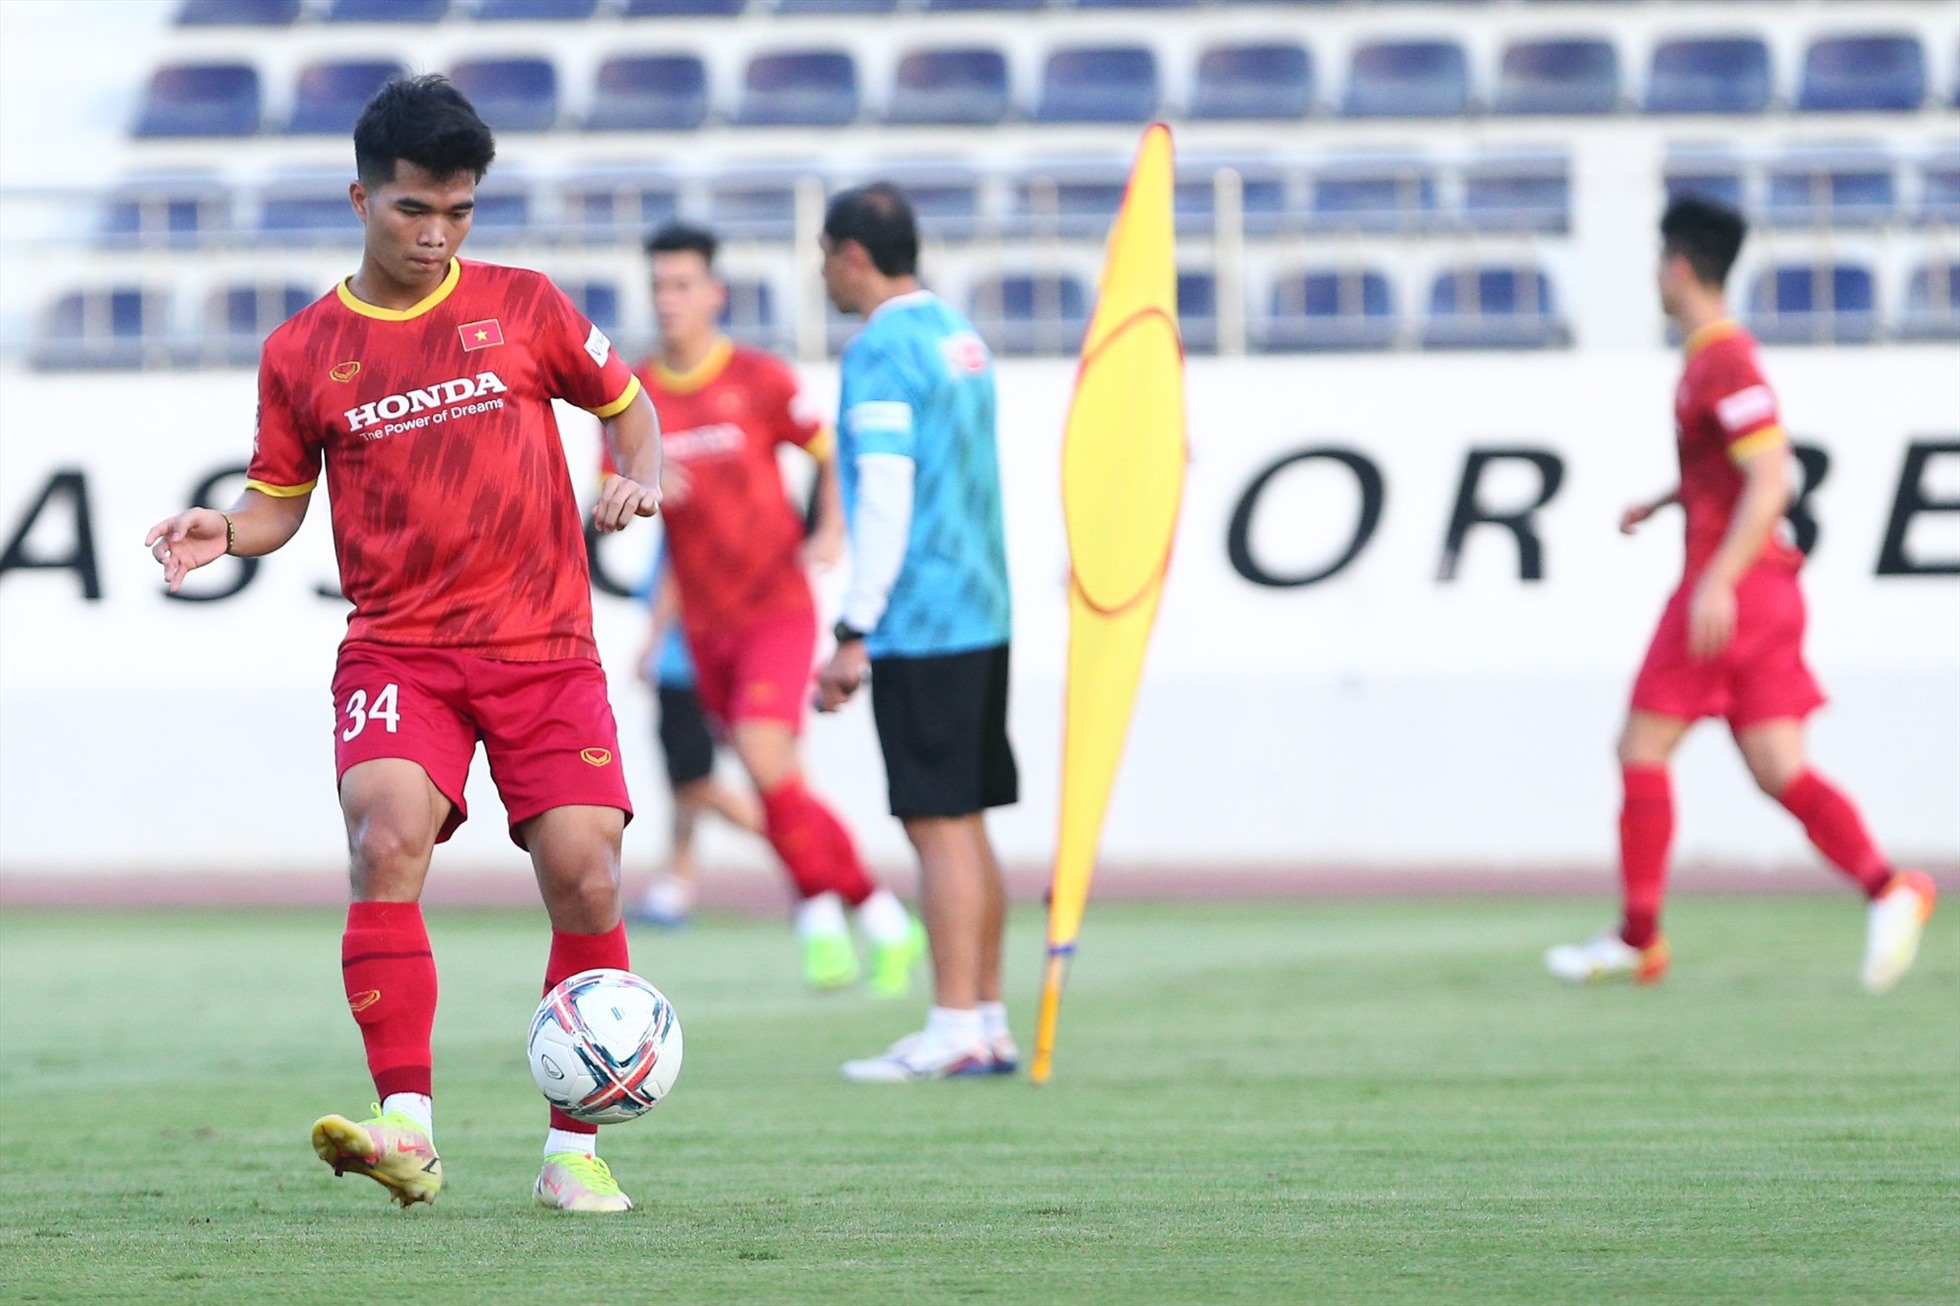 Ngày 14.12, đội tuyển Việt Nam thi đấu giao hữu với Philippines trên sân vận động Hàng Đẫy. Đây là trận đấu tập dượt cuối cùng của thầy trò huấn luyện viên Park Hang-seo trước khi bước vào AFF Cup 2022.